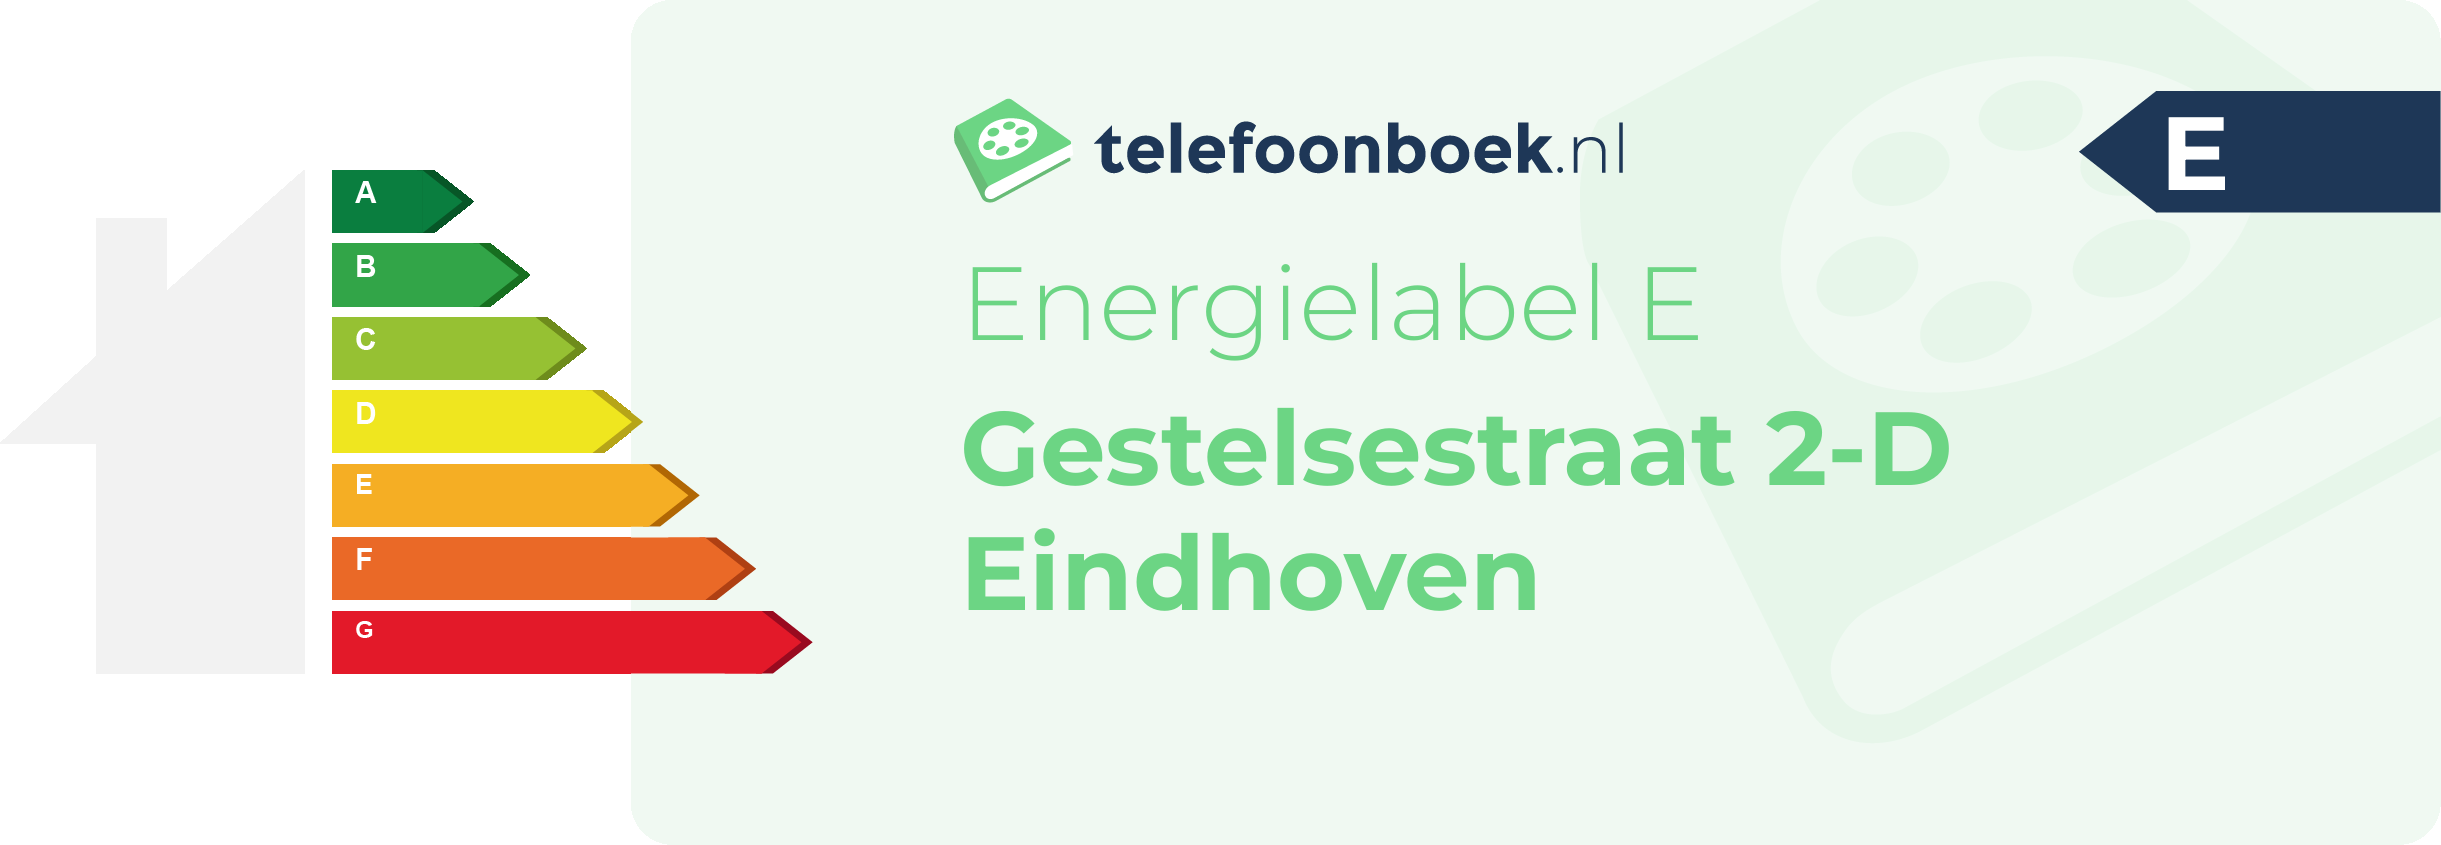 Energielabel Gestelsestraat 2-D Eindhoven